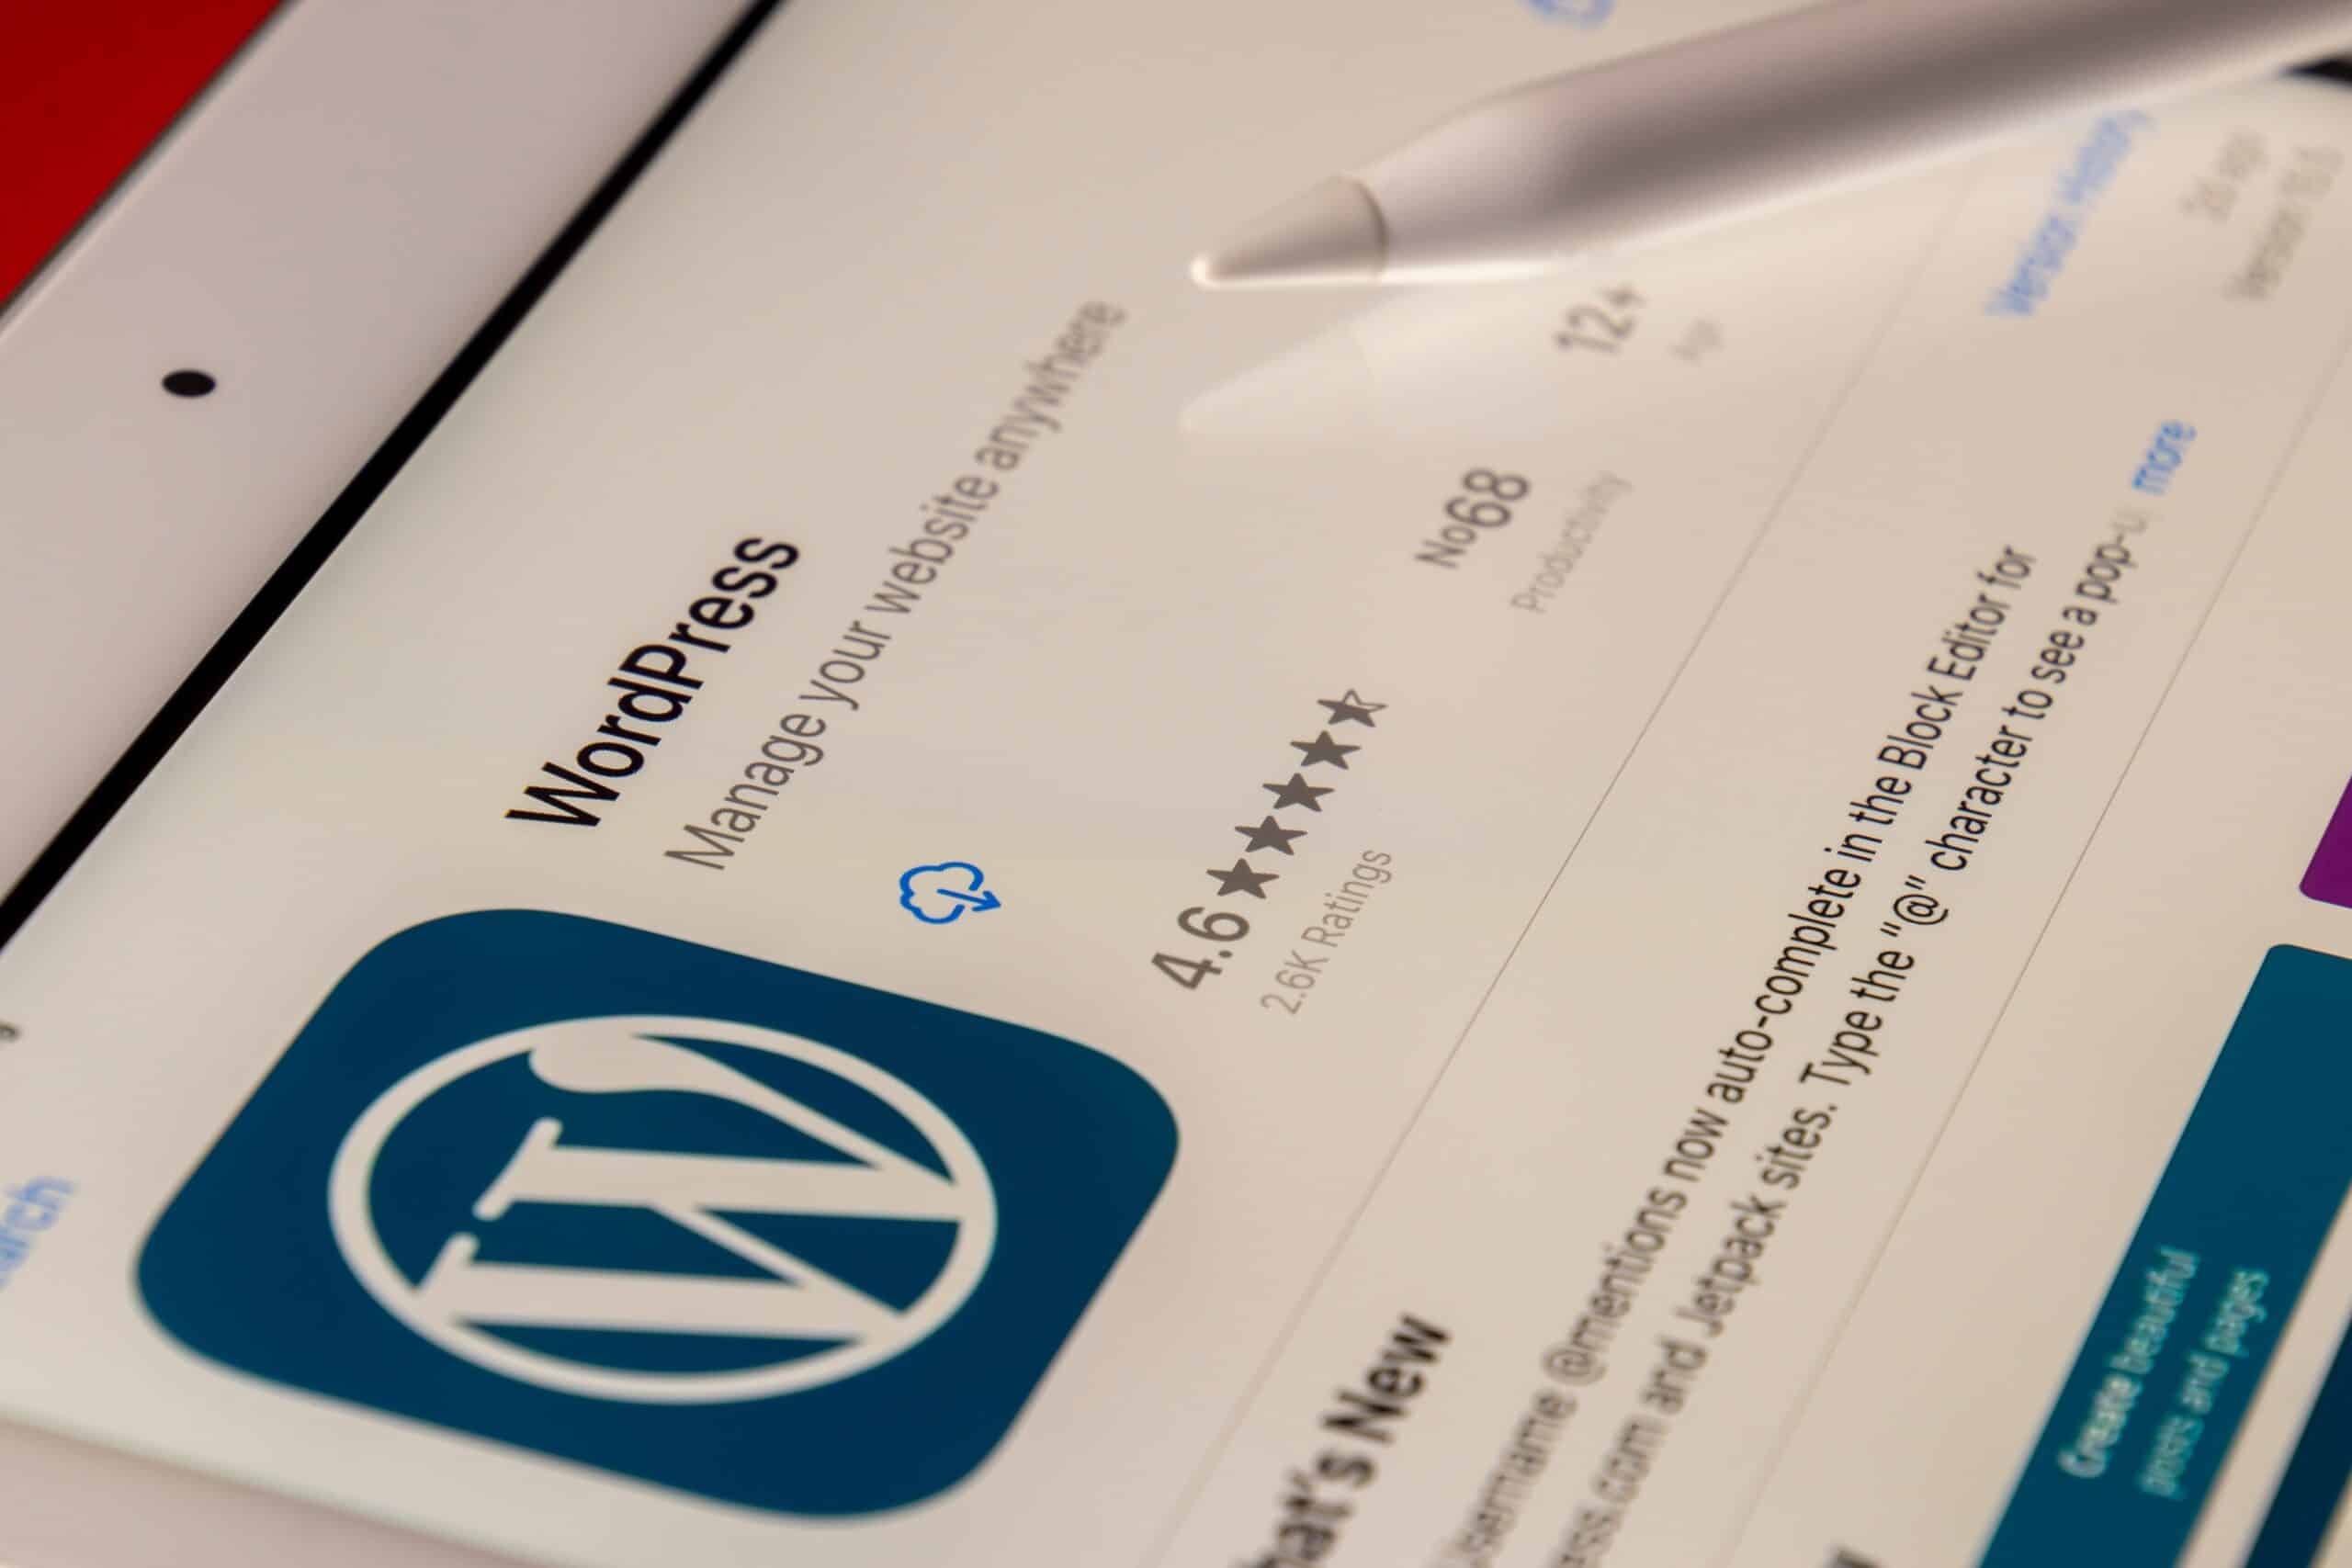 Формати на публикации в WordPress и потребителски типове публикации